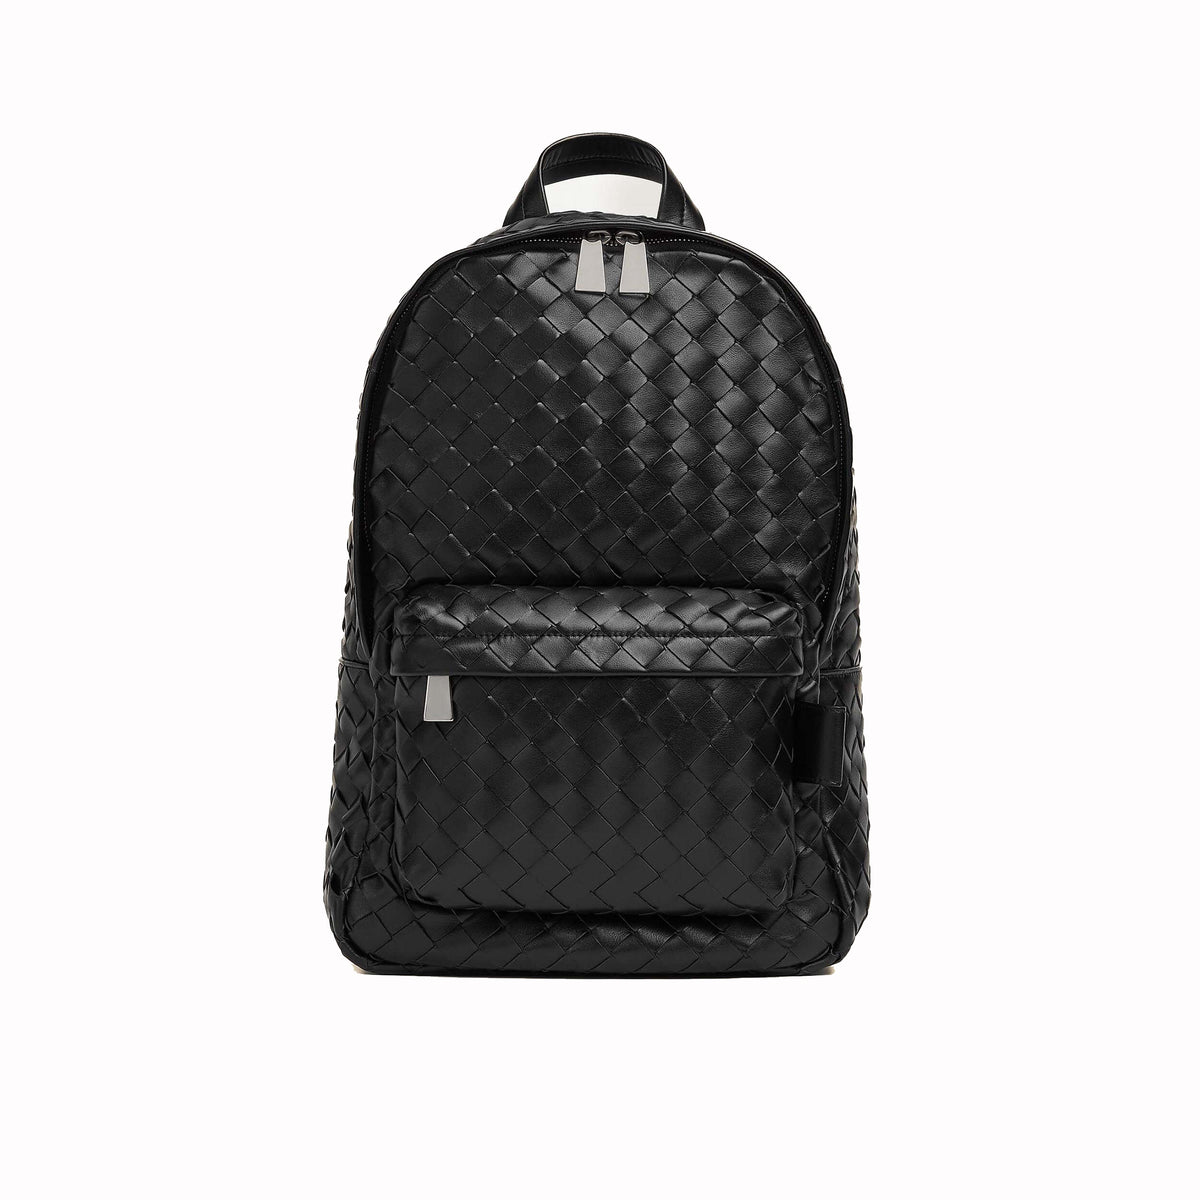 Rowan Leather Backpack Black